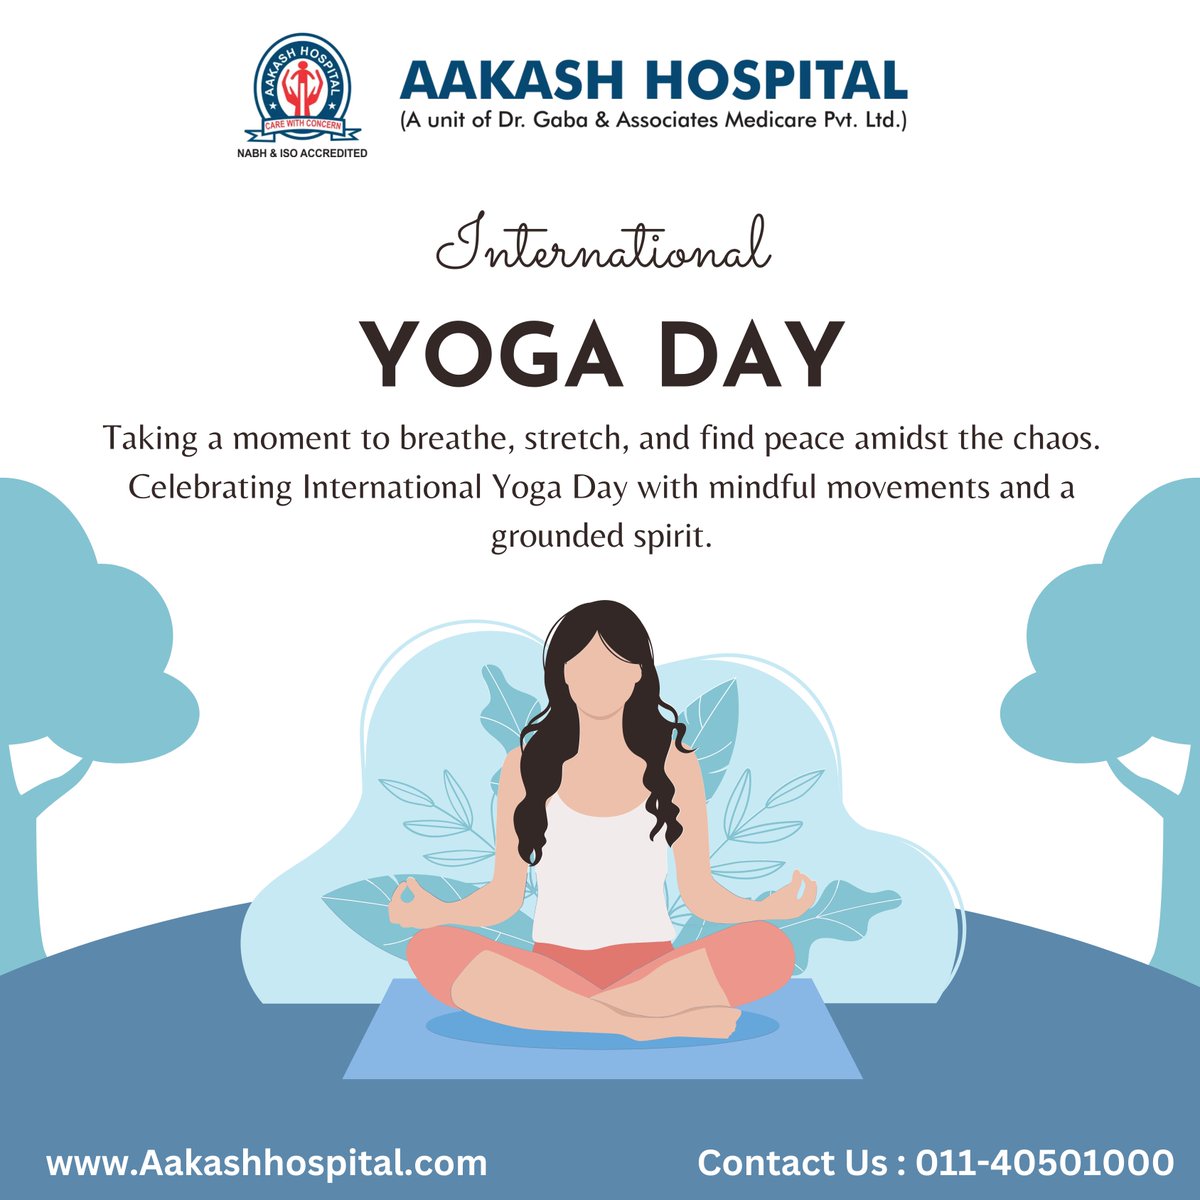 Happy International Yoga Day 🧘🏻
.
.
.
.
.
.
.
.
#YogaDay  #InternationalYogaDay  #fitness  #meditation #postoftheday  #Breathe #yogalove #yogainspiration #yogapractice #selfcareday #wellnessjourney #fitnessday #yogaday2023